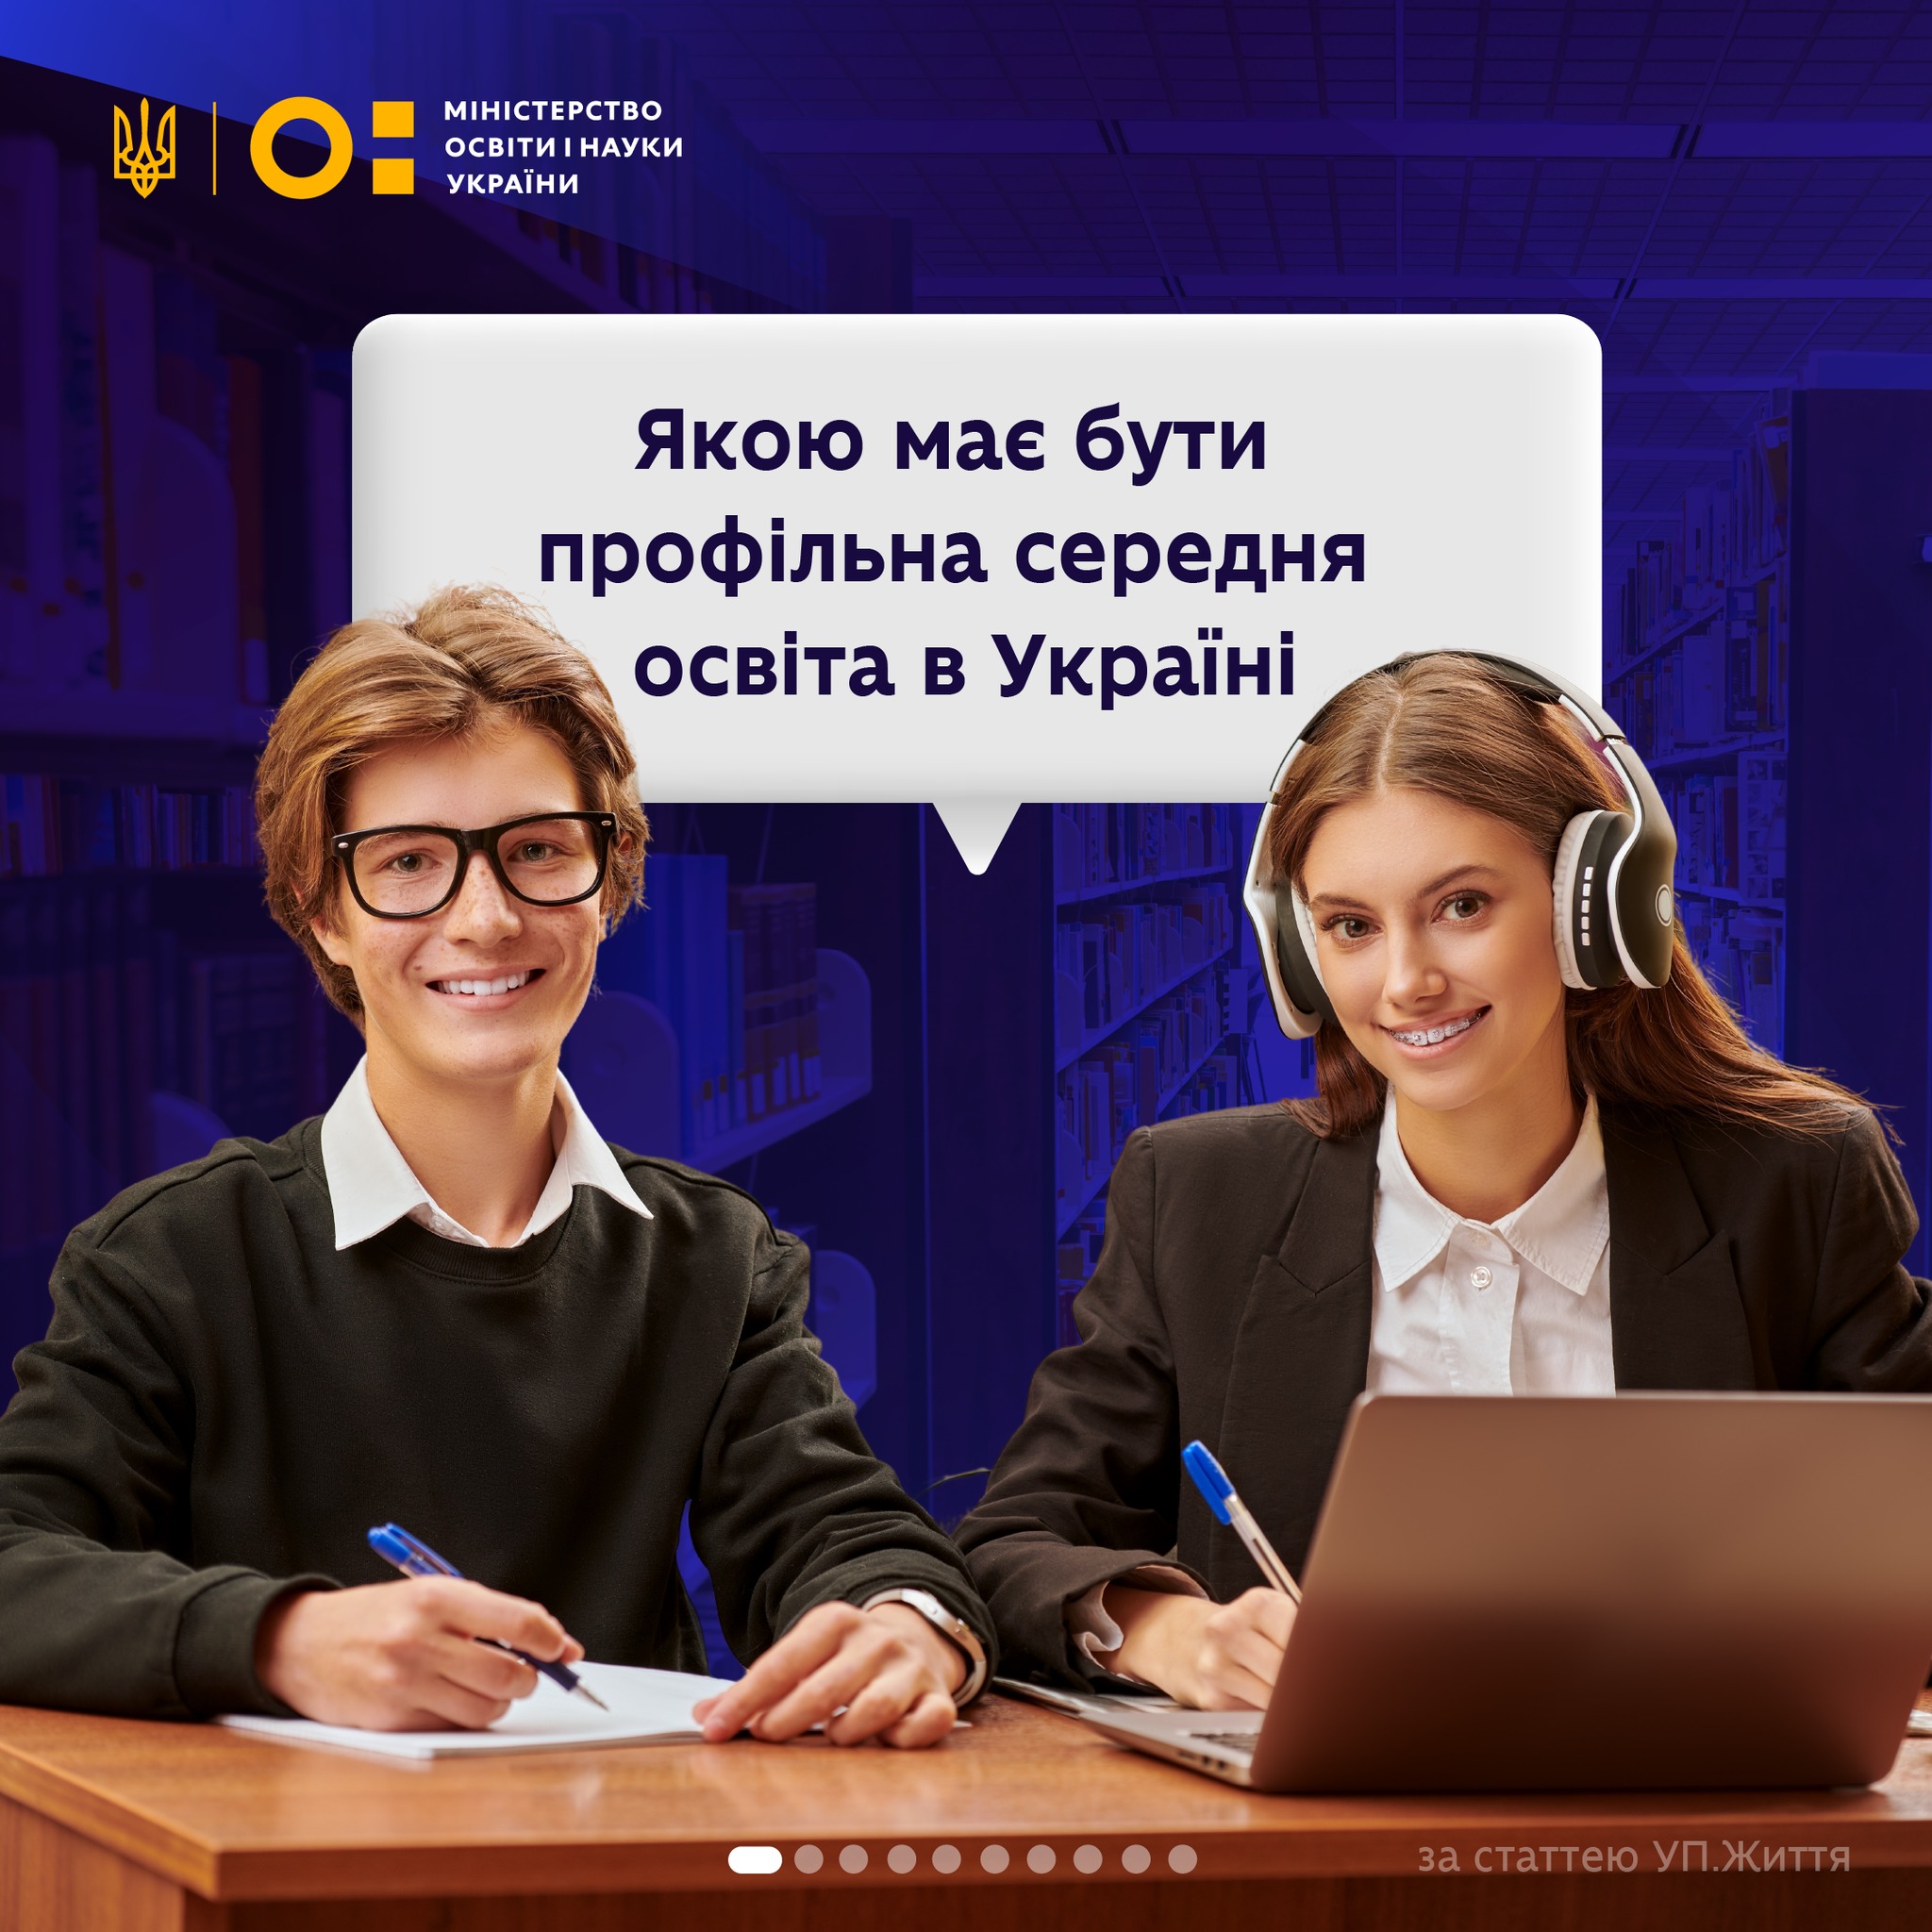 Міністерство освіти і науки України інформує: реформа профільної середньої освіти